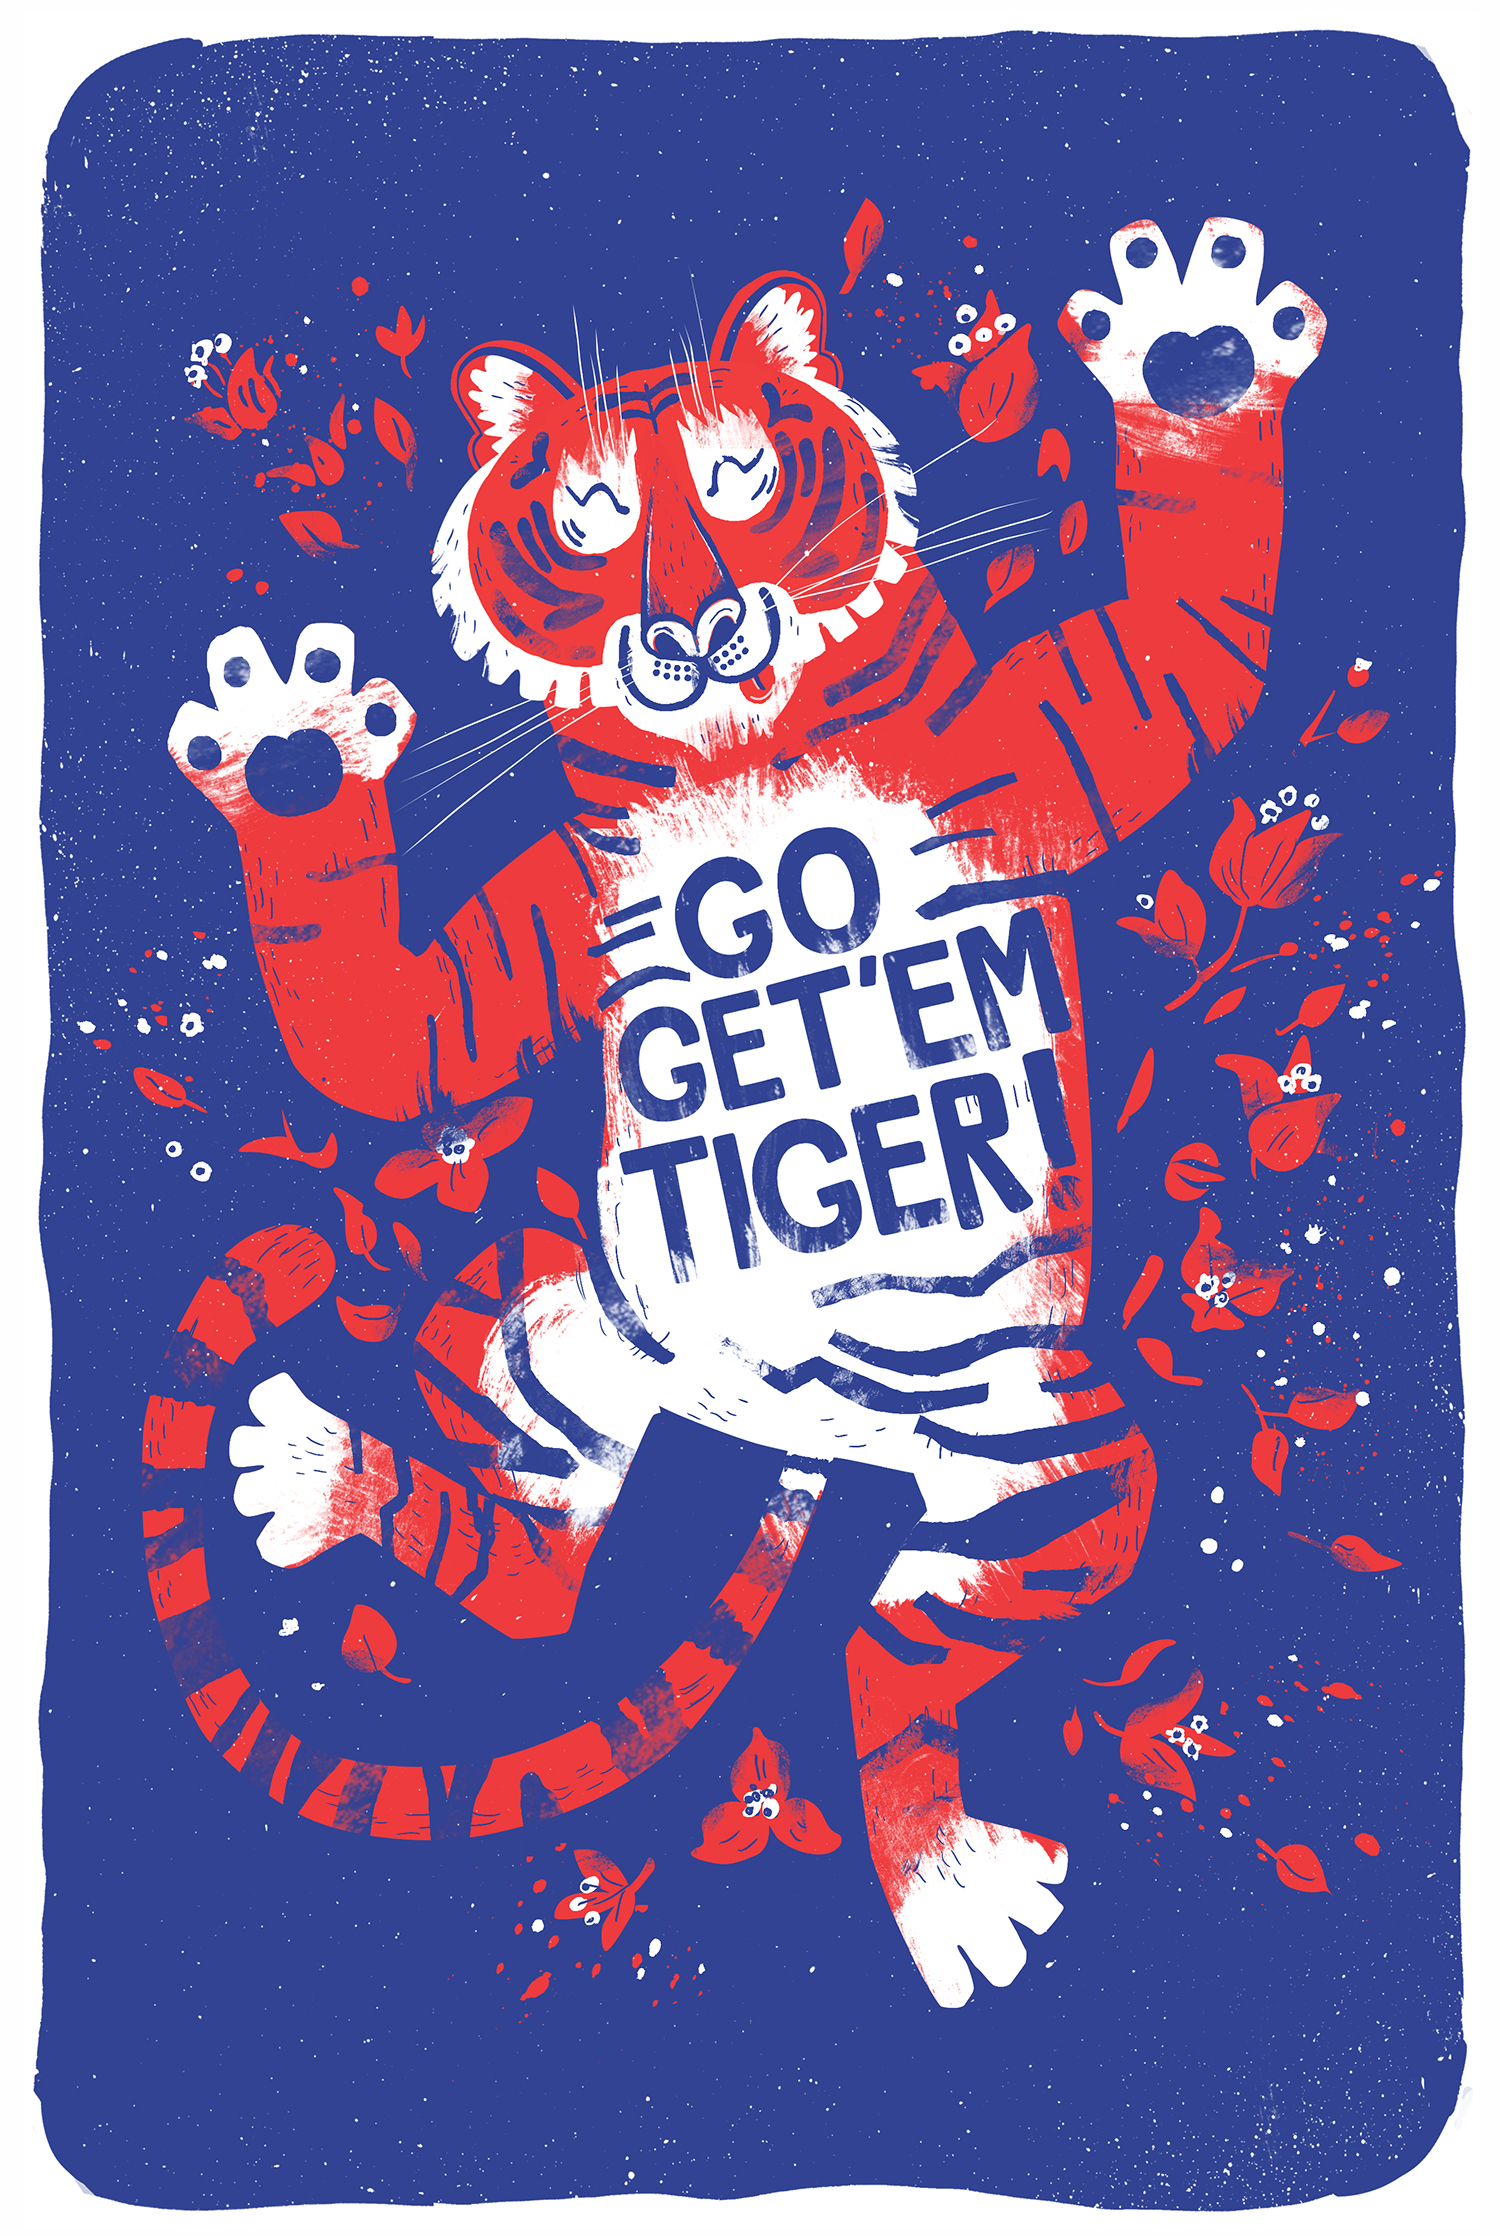 Go get 'em tiger!